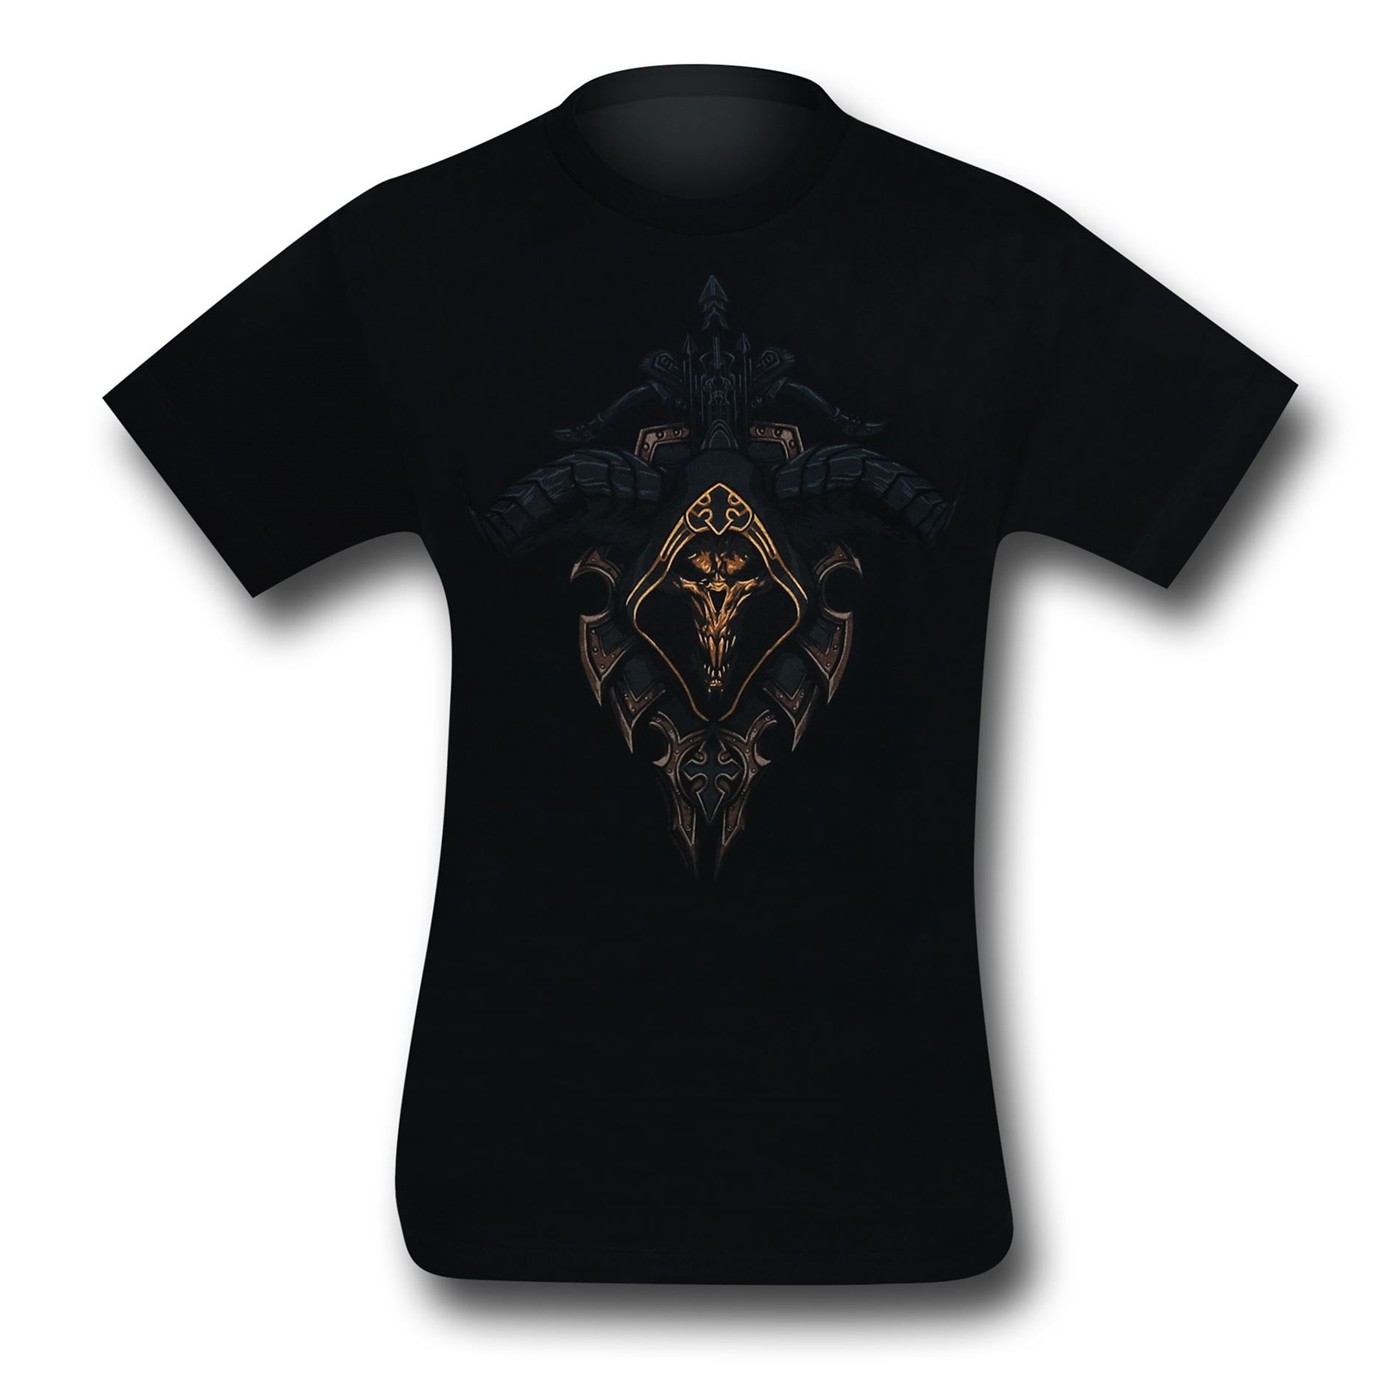 Diablo III Demon Hunter Class T-Shirt